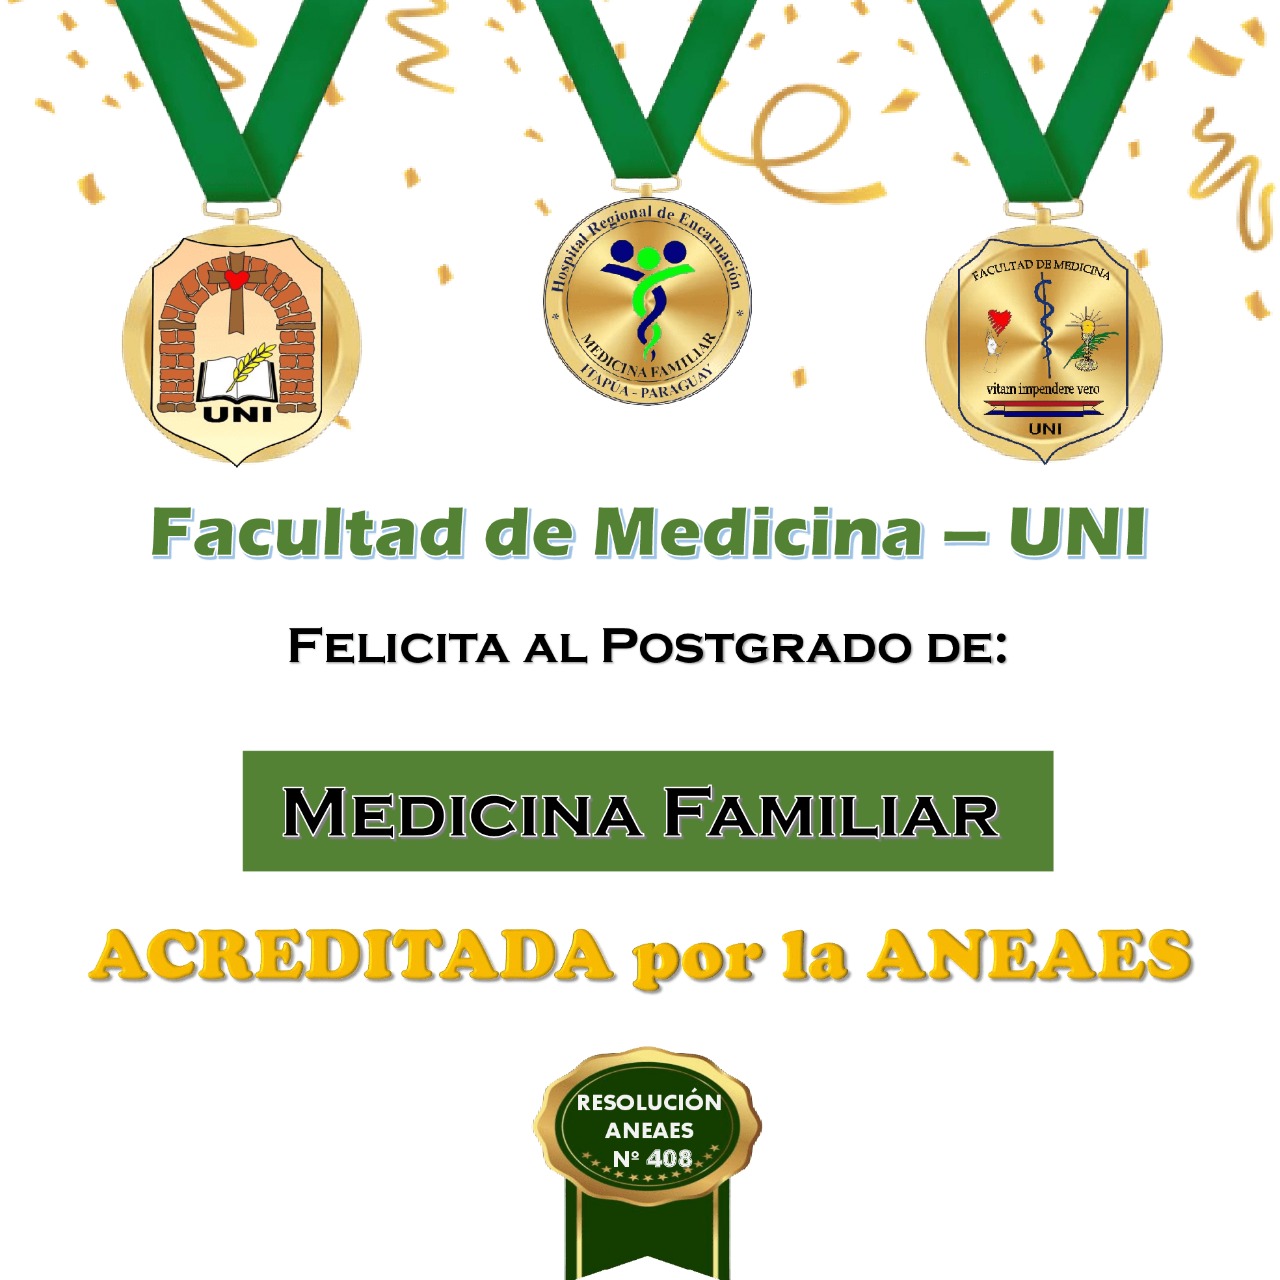 Especialización en Medicina Familiar de Medicina UNI ACREDITADA